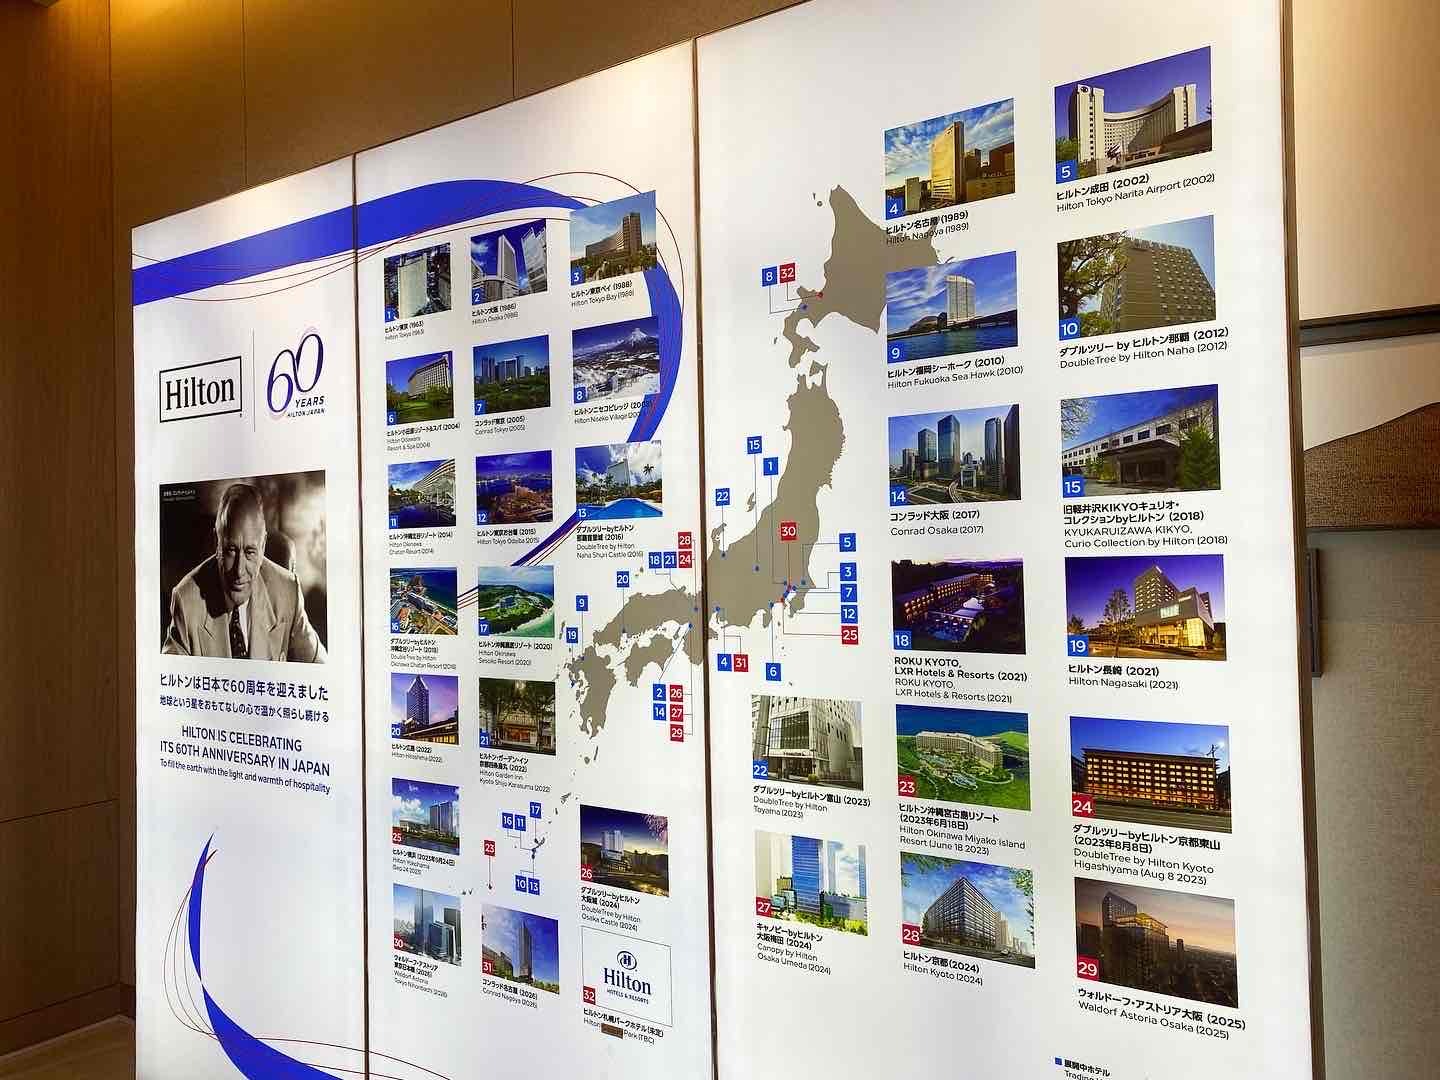 60周年の記念として展示されている日本にあるヒルトン系列の施設をまとめたマップ